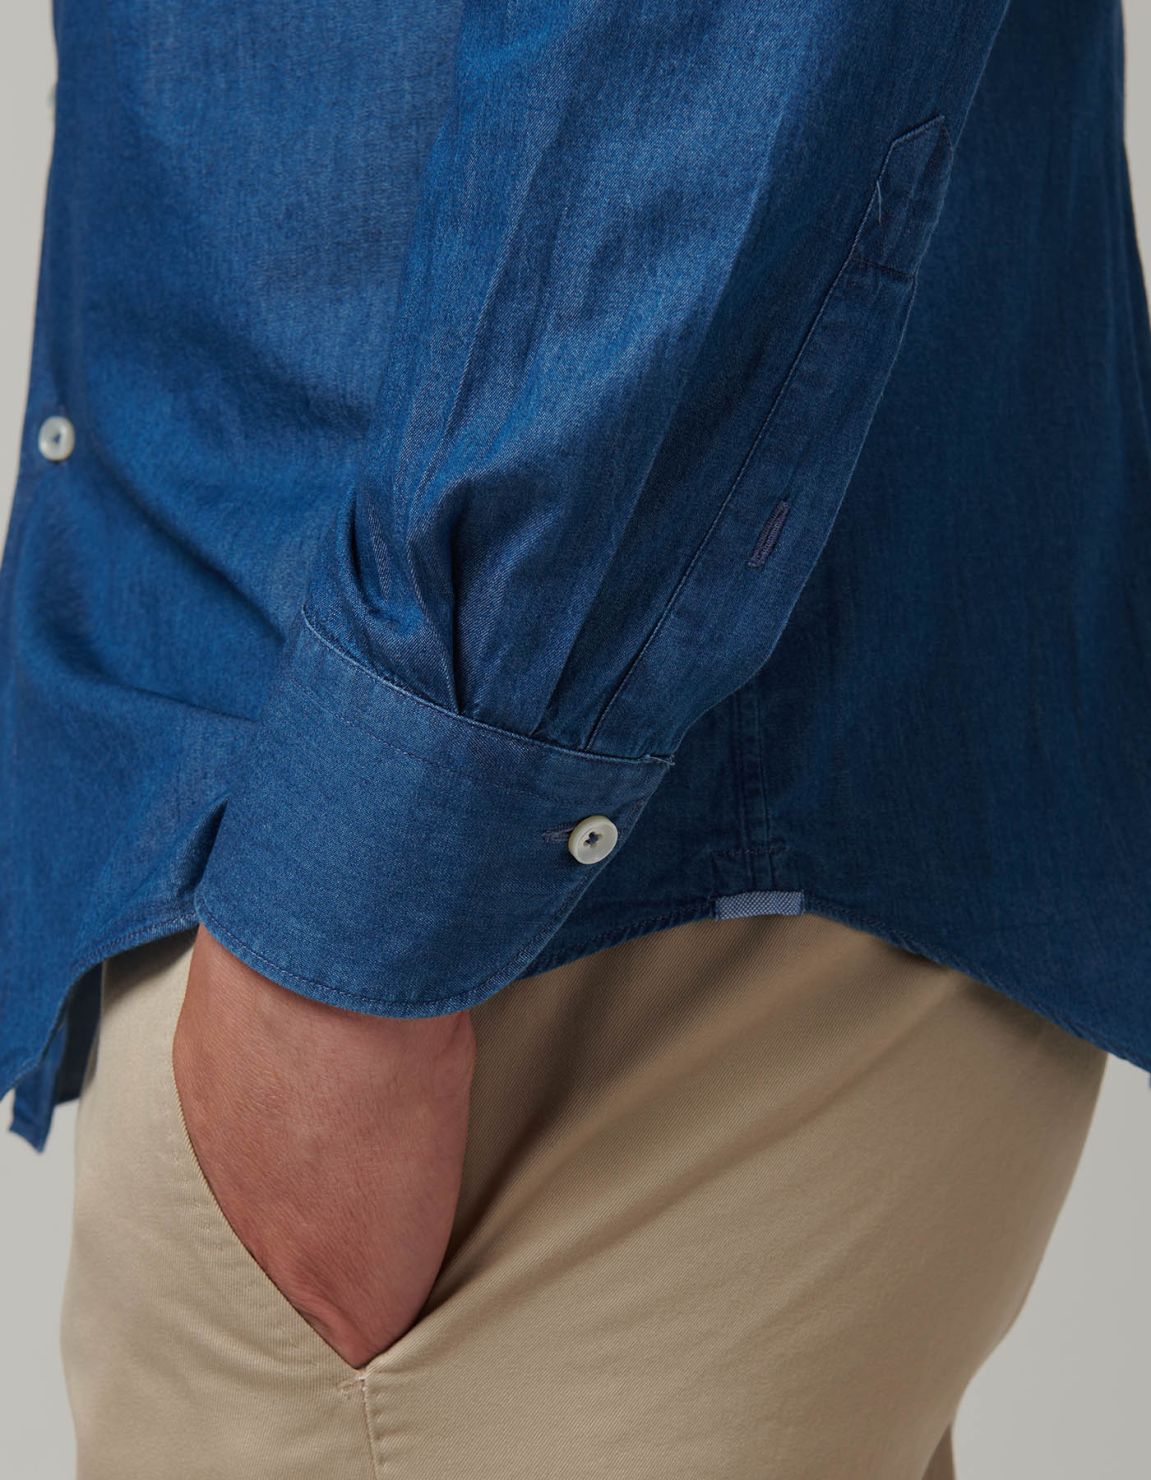 Chemise Col français Blue jeans Toile Unie Tailor Custom Fit 4